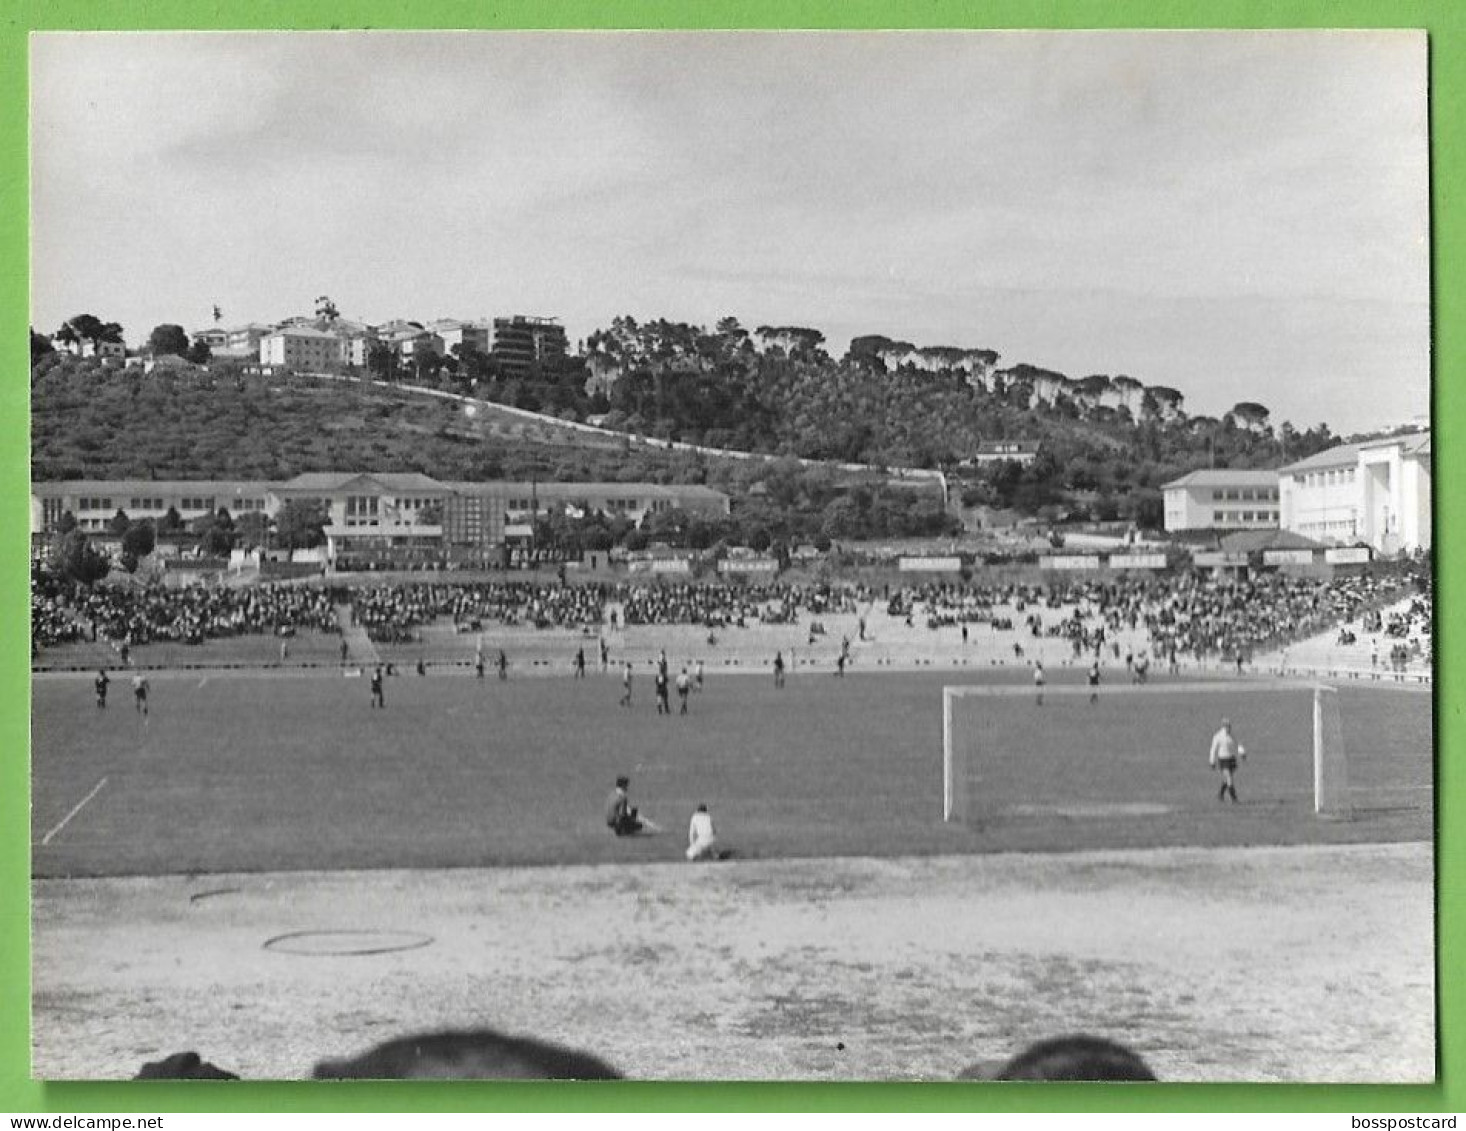 Coimbra - REAL PHOTO - Estádio De Futebol Da Académica - Stadium - Football - Portugal - Stades